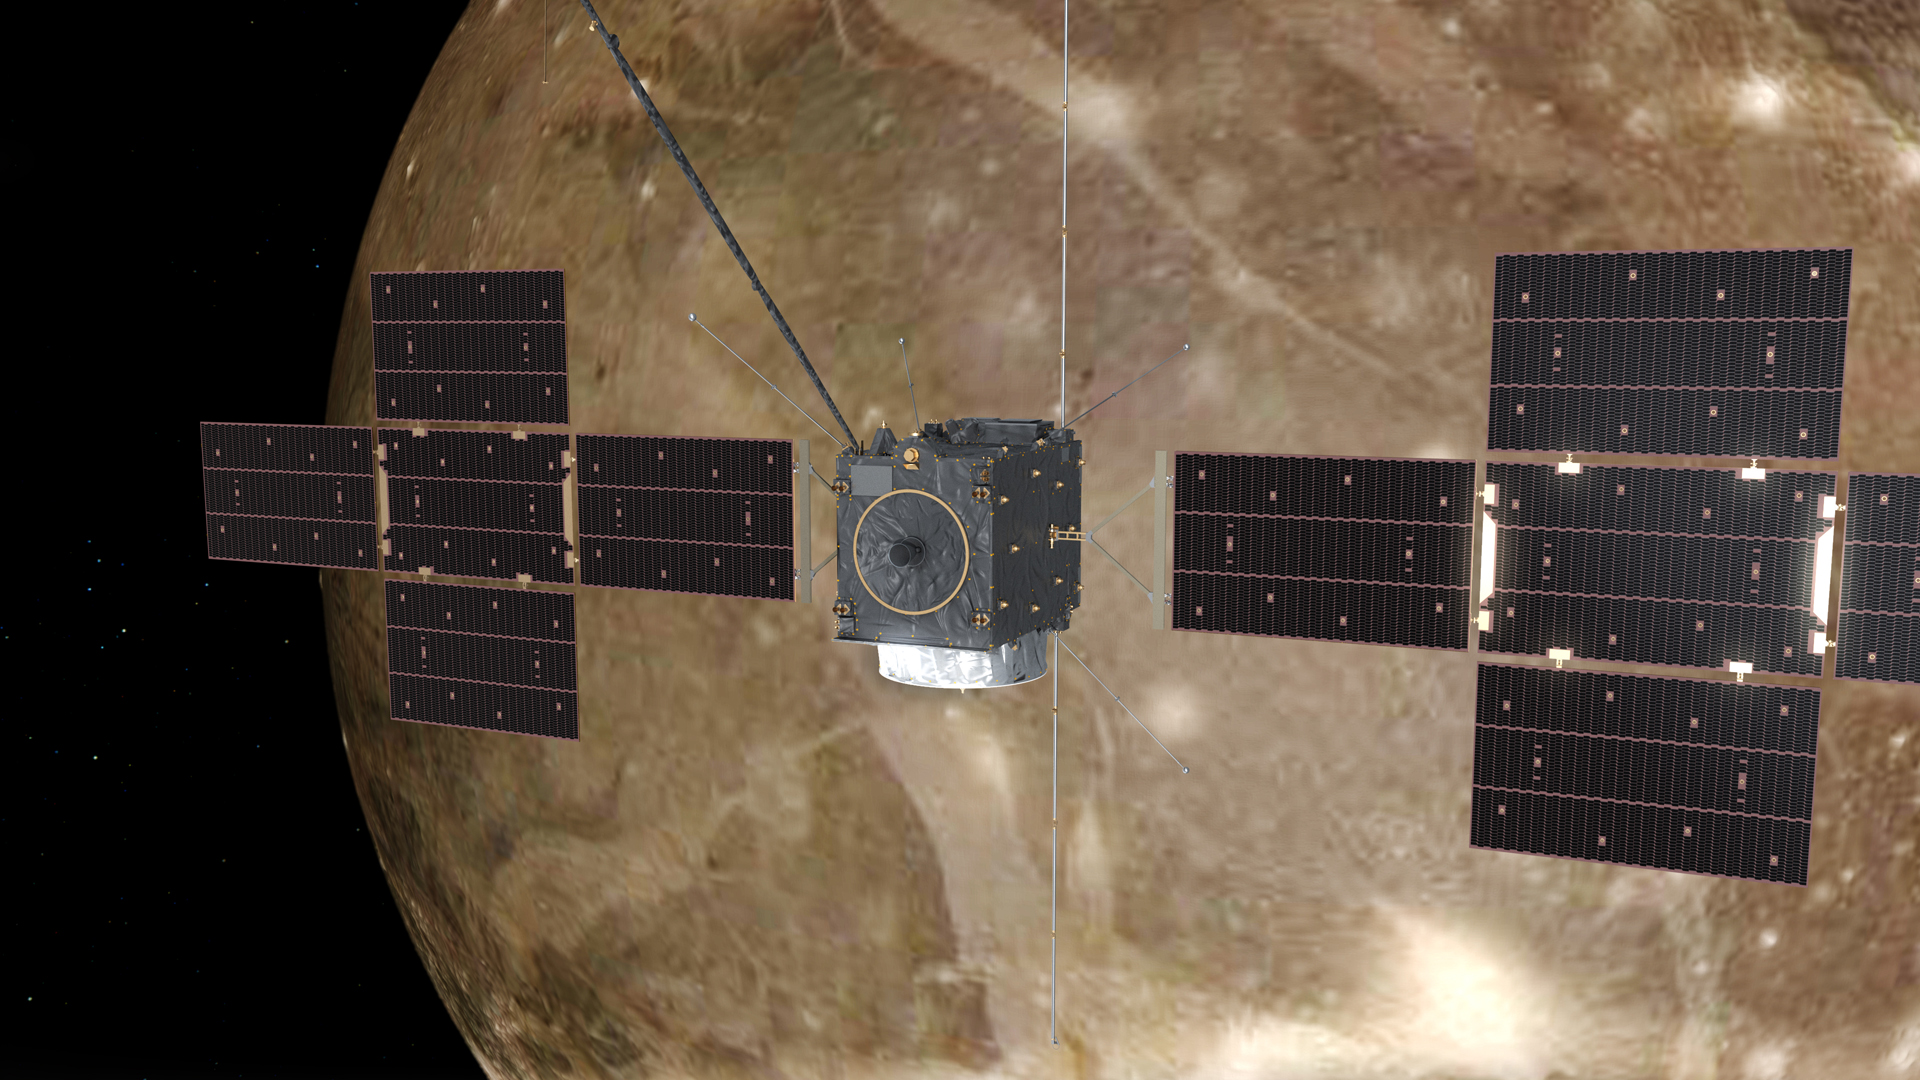 Avrupa Uzay Ajansı'nın (ESA) Juice uzay aracı, Jüpiter'in uydusu Ganymede'nin yörüngesinde.